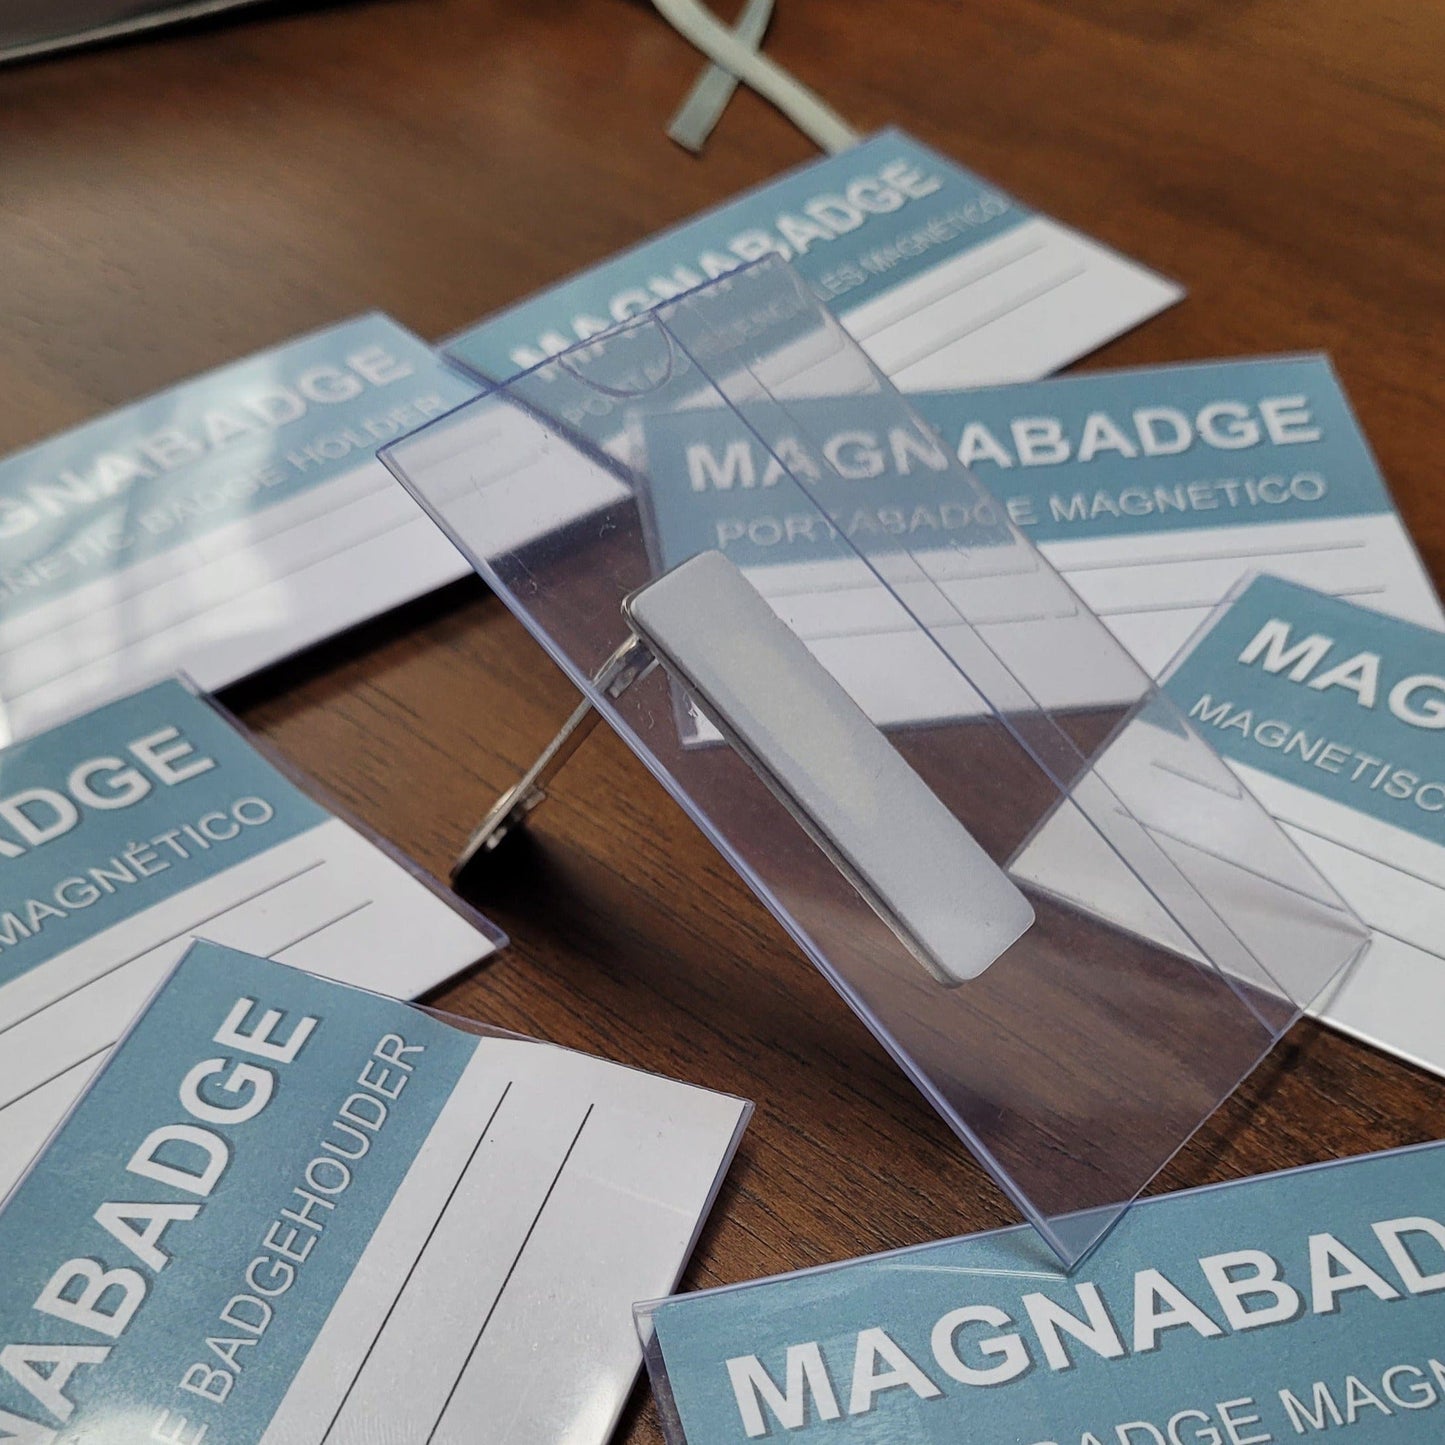 MagnaBadge™ Holder